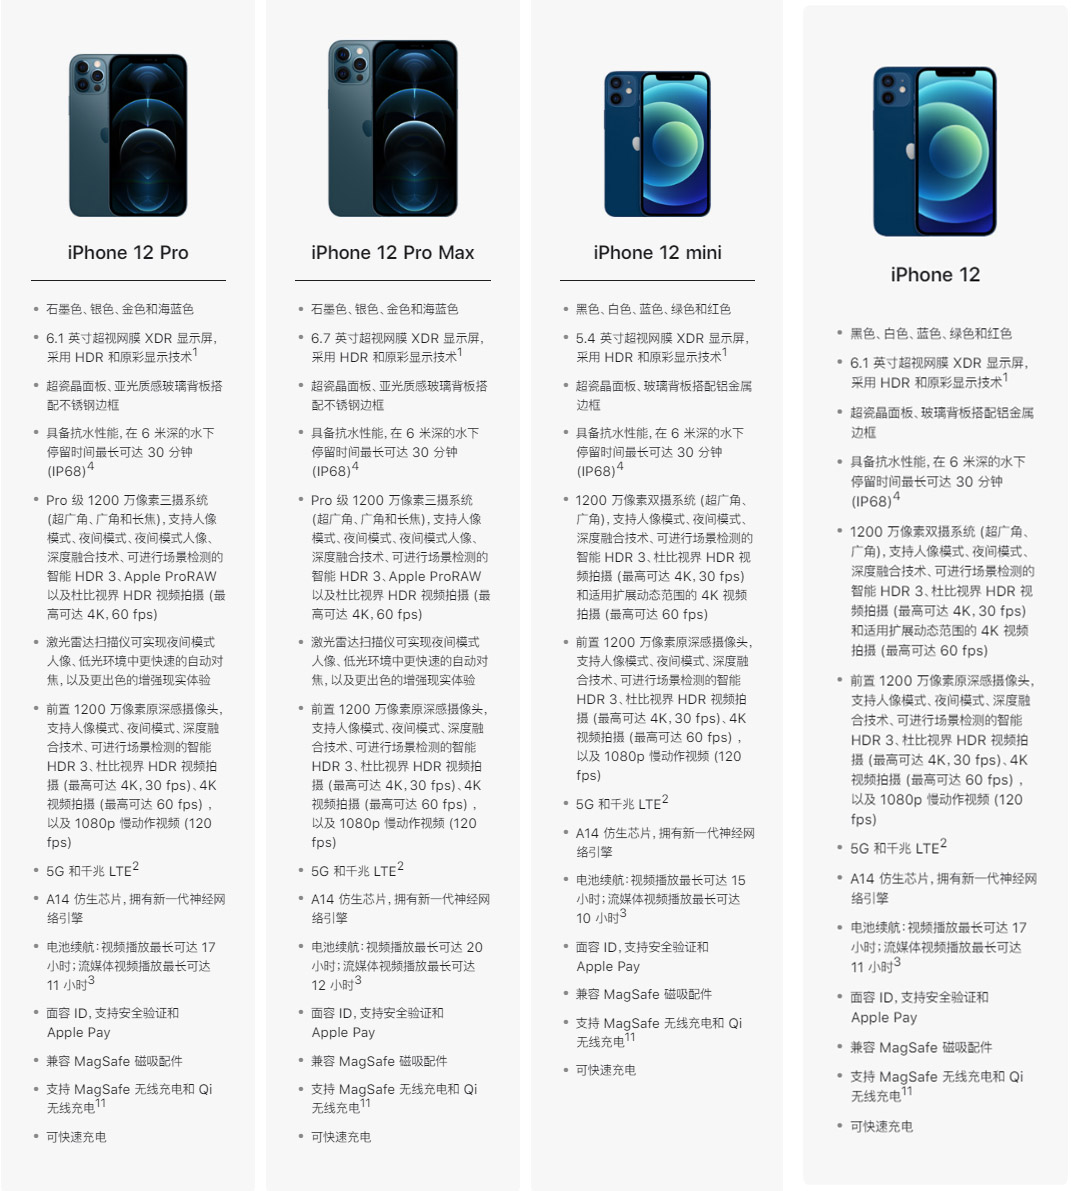 苹果 iPhone 12 系列机型预购和发售时间一览